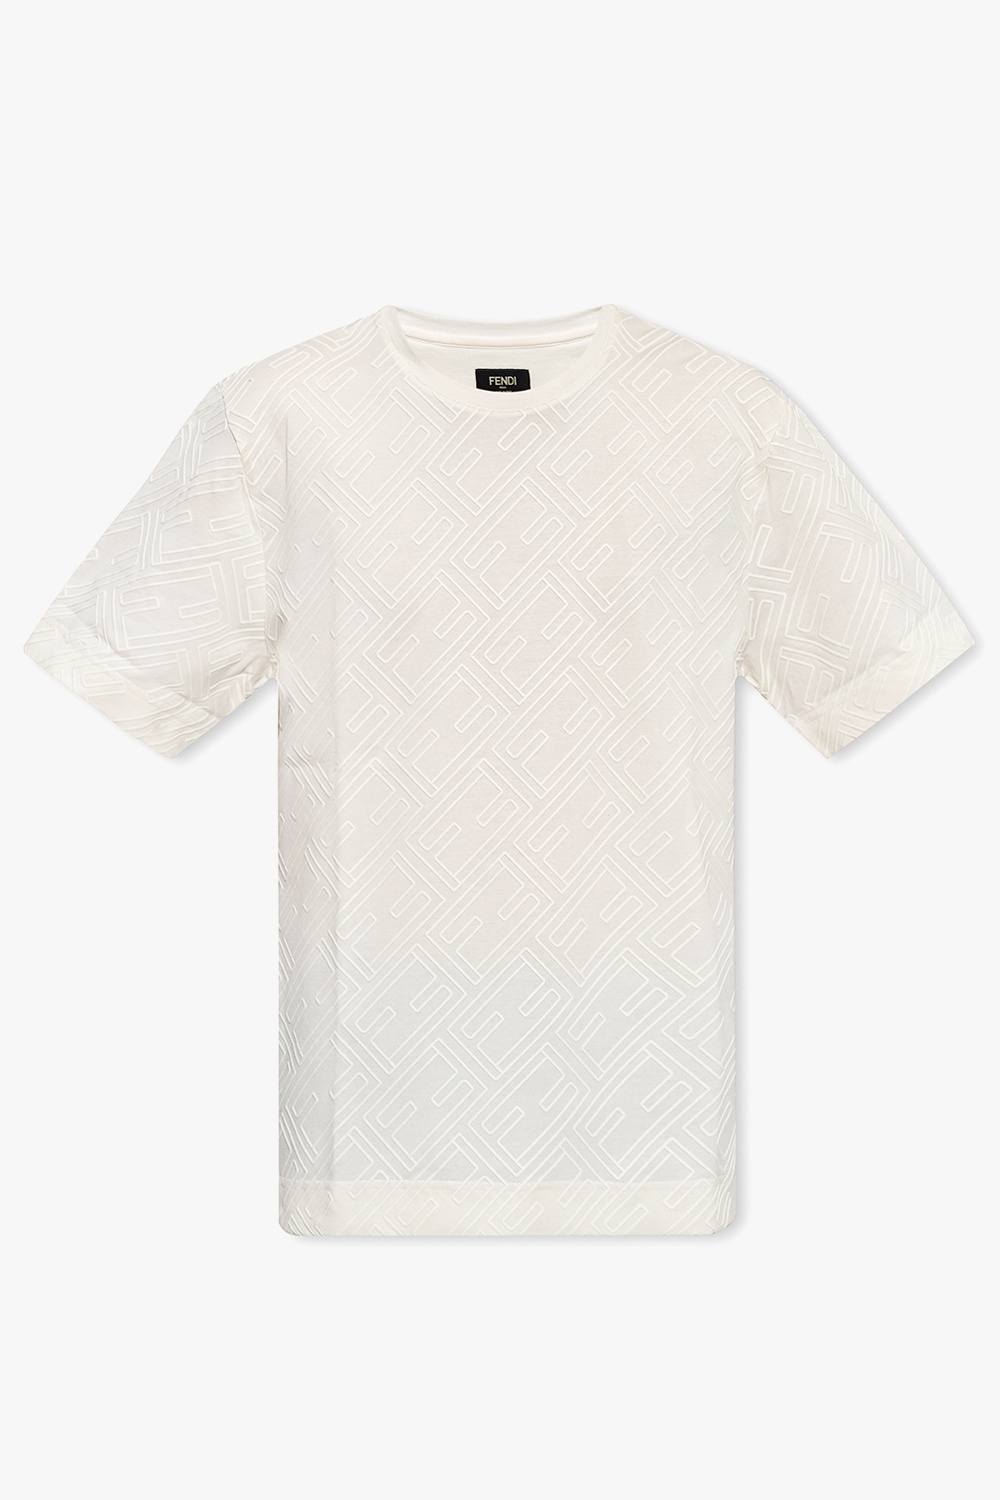 Louis Vuitton Cream Silk/Cotton Monogram Towelling S/S T-shirt sz